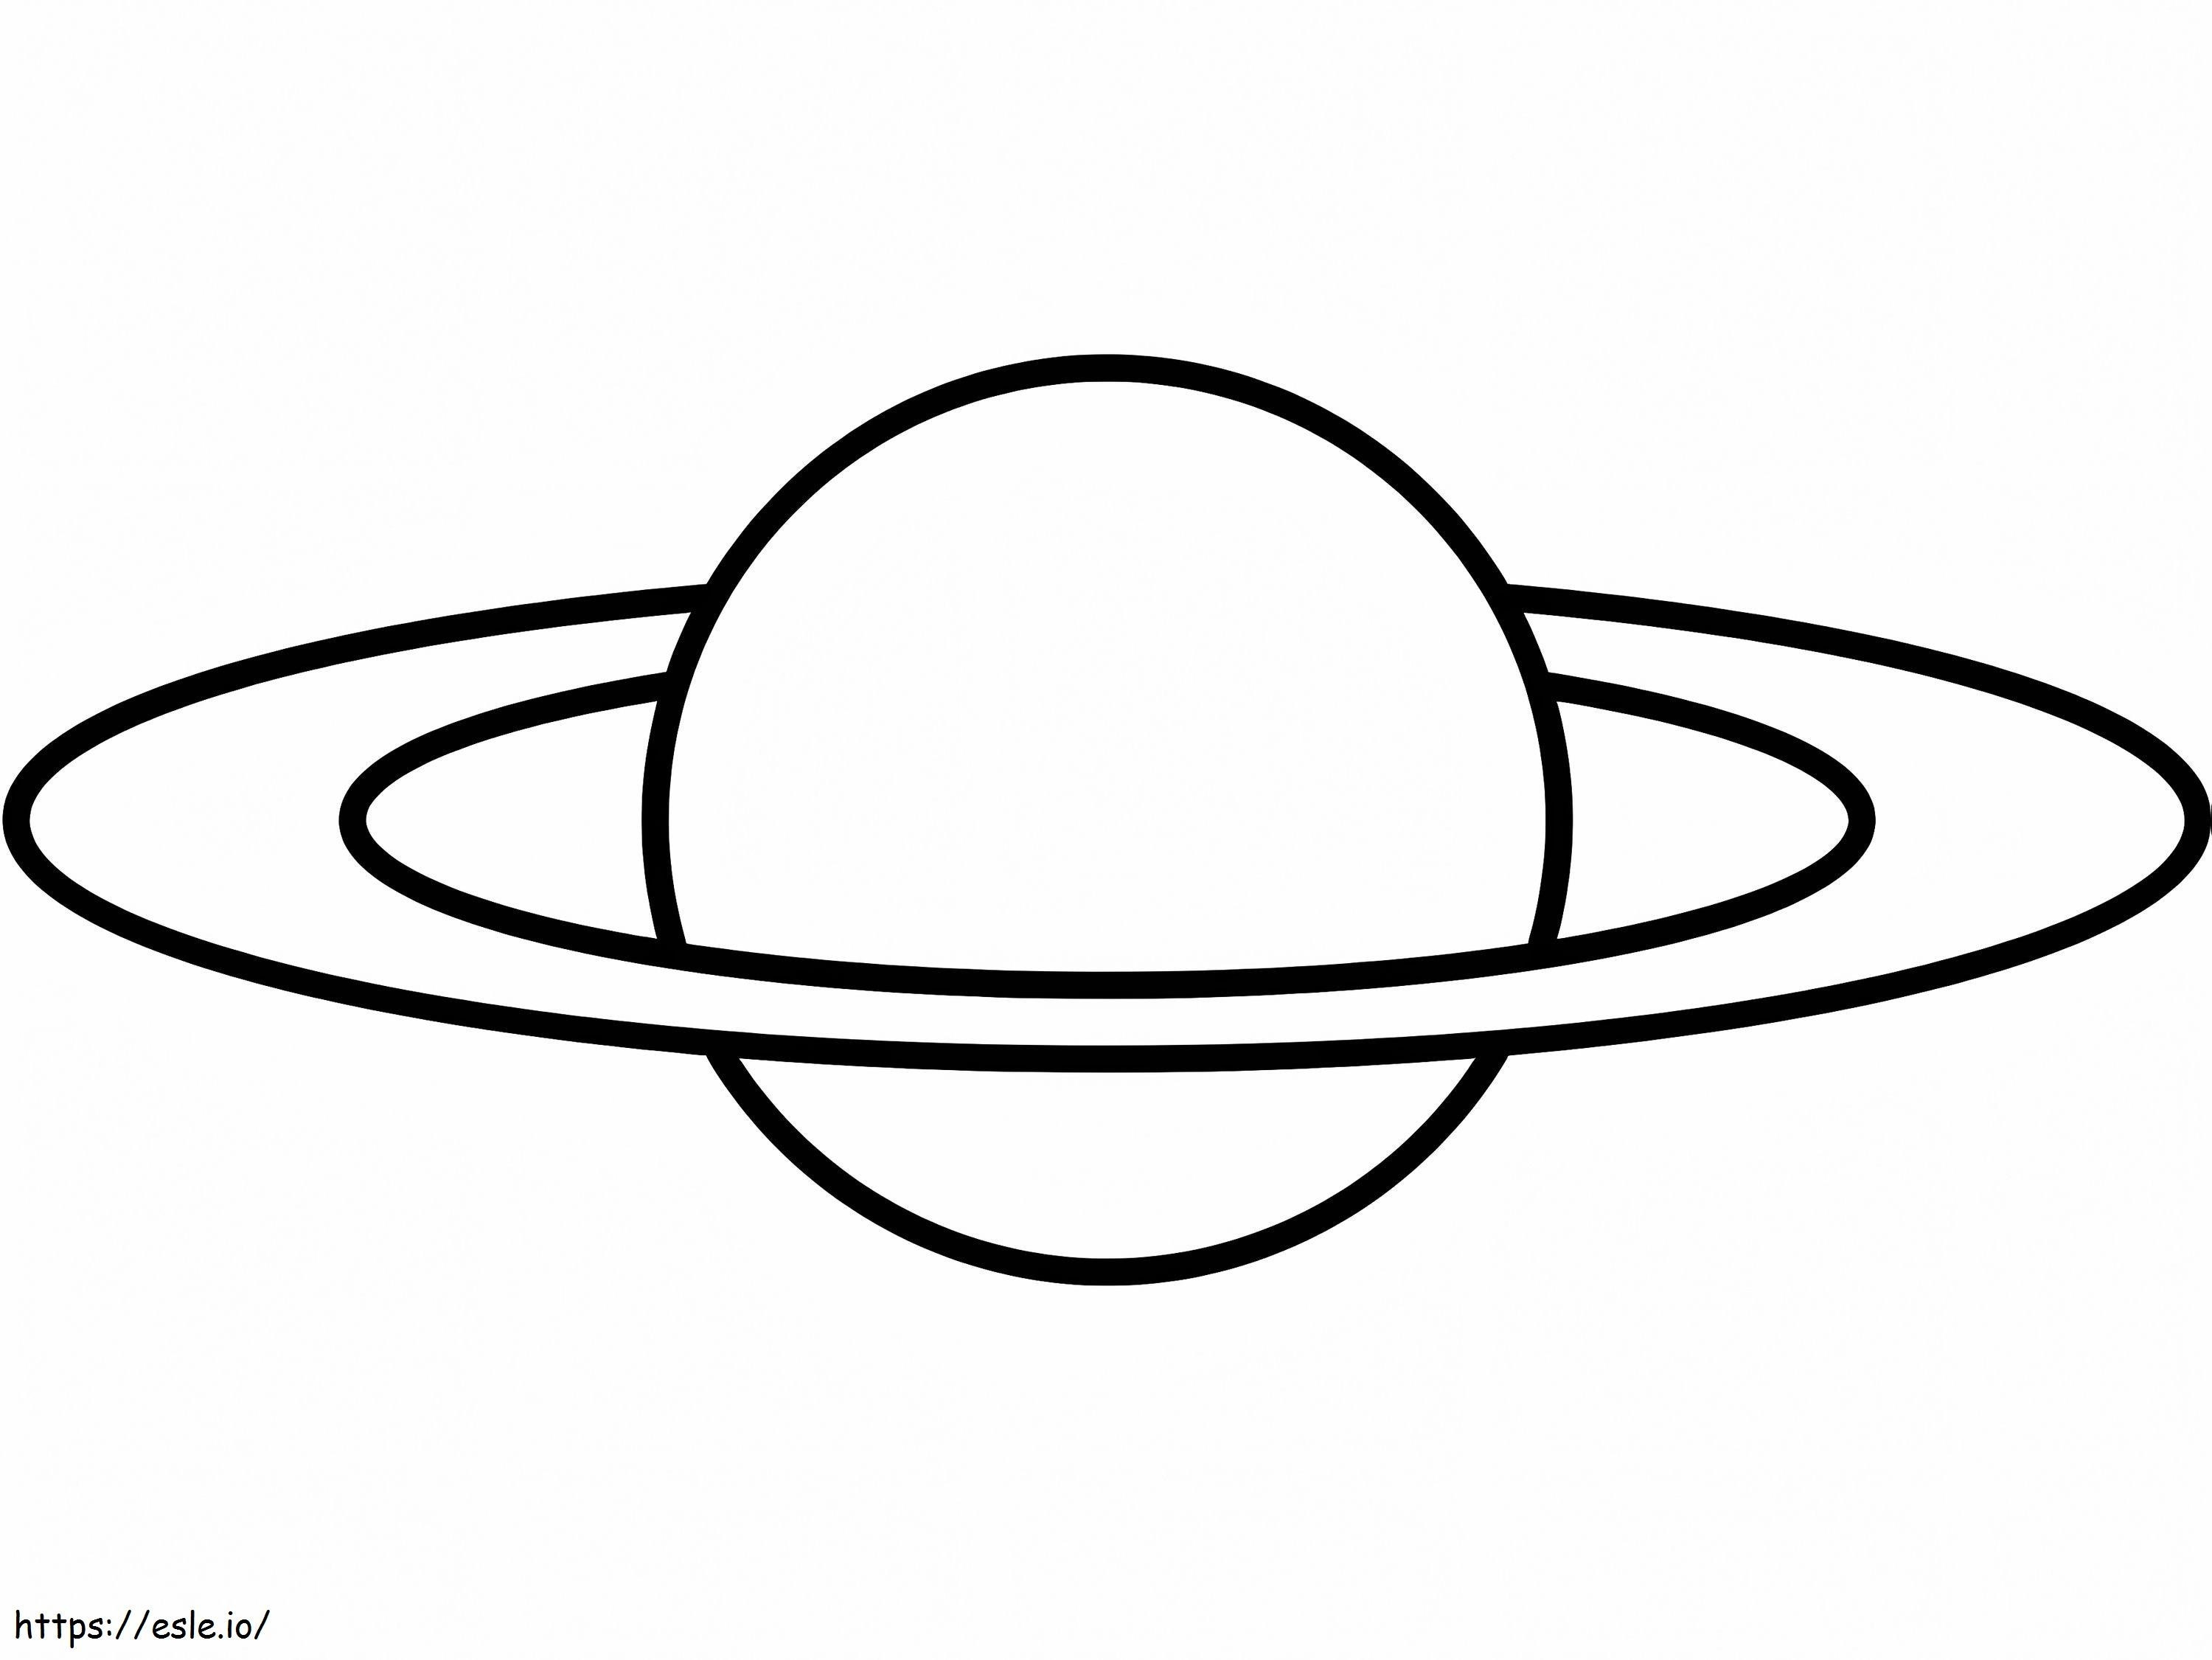 Saturno simple 2 para colorear